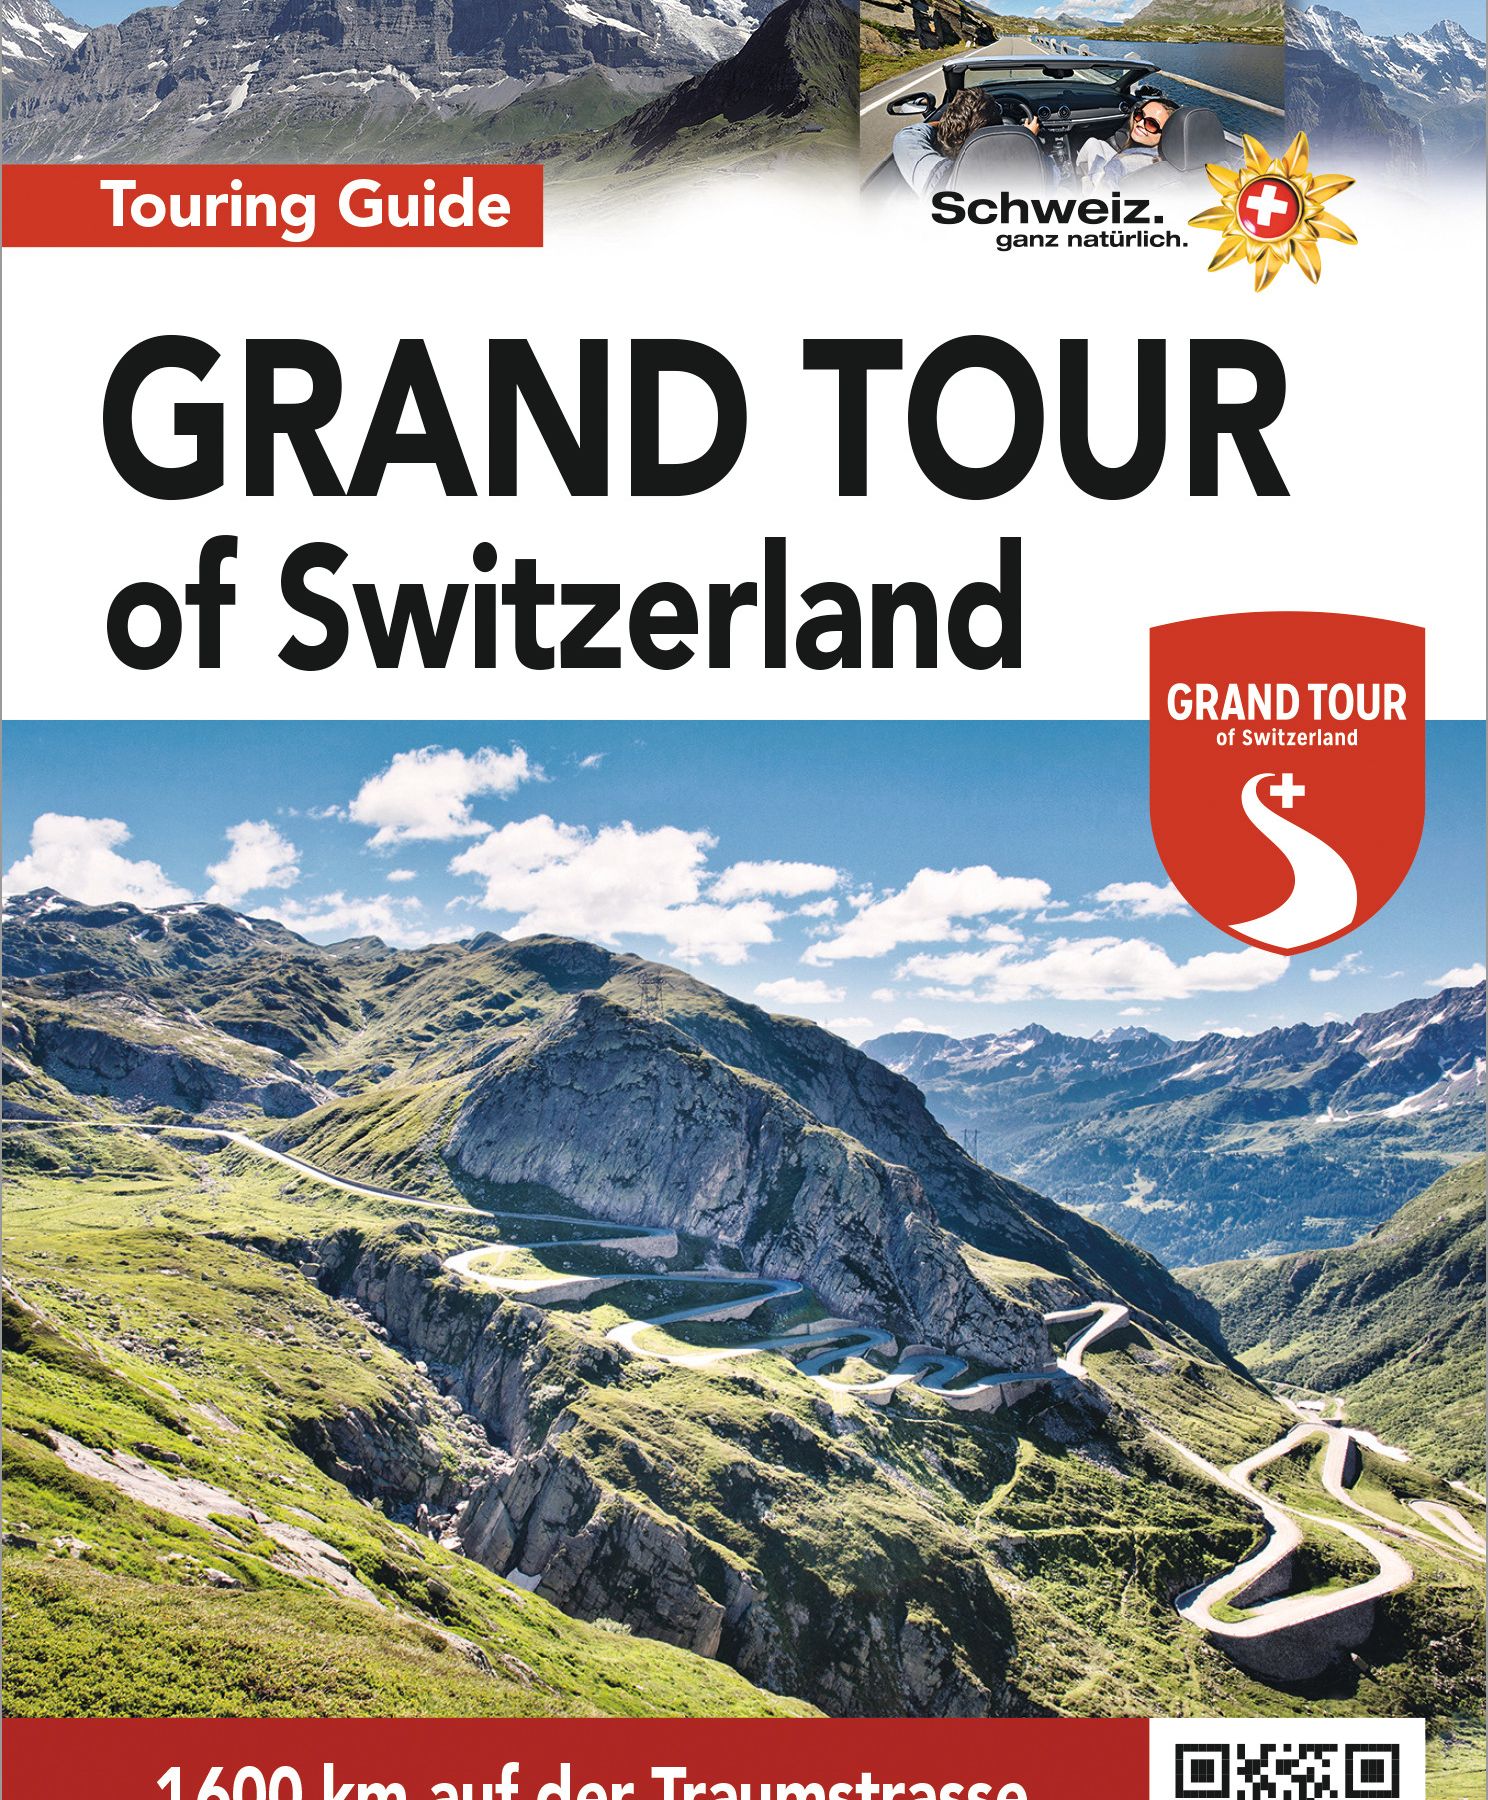 The Grand Tour of Switzerland